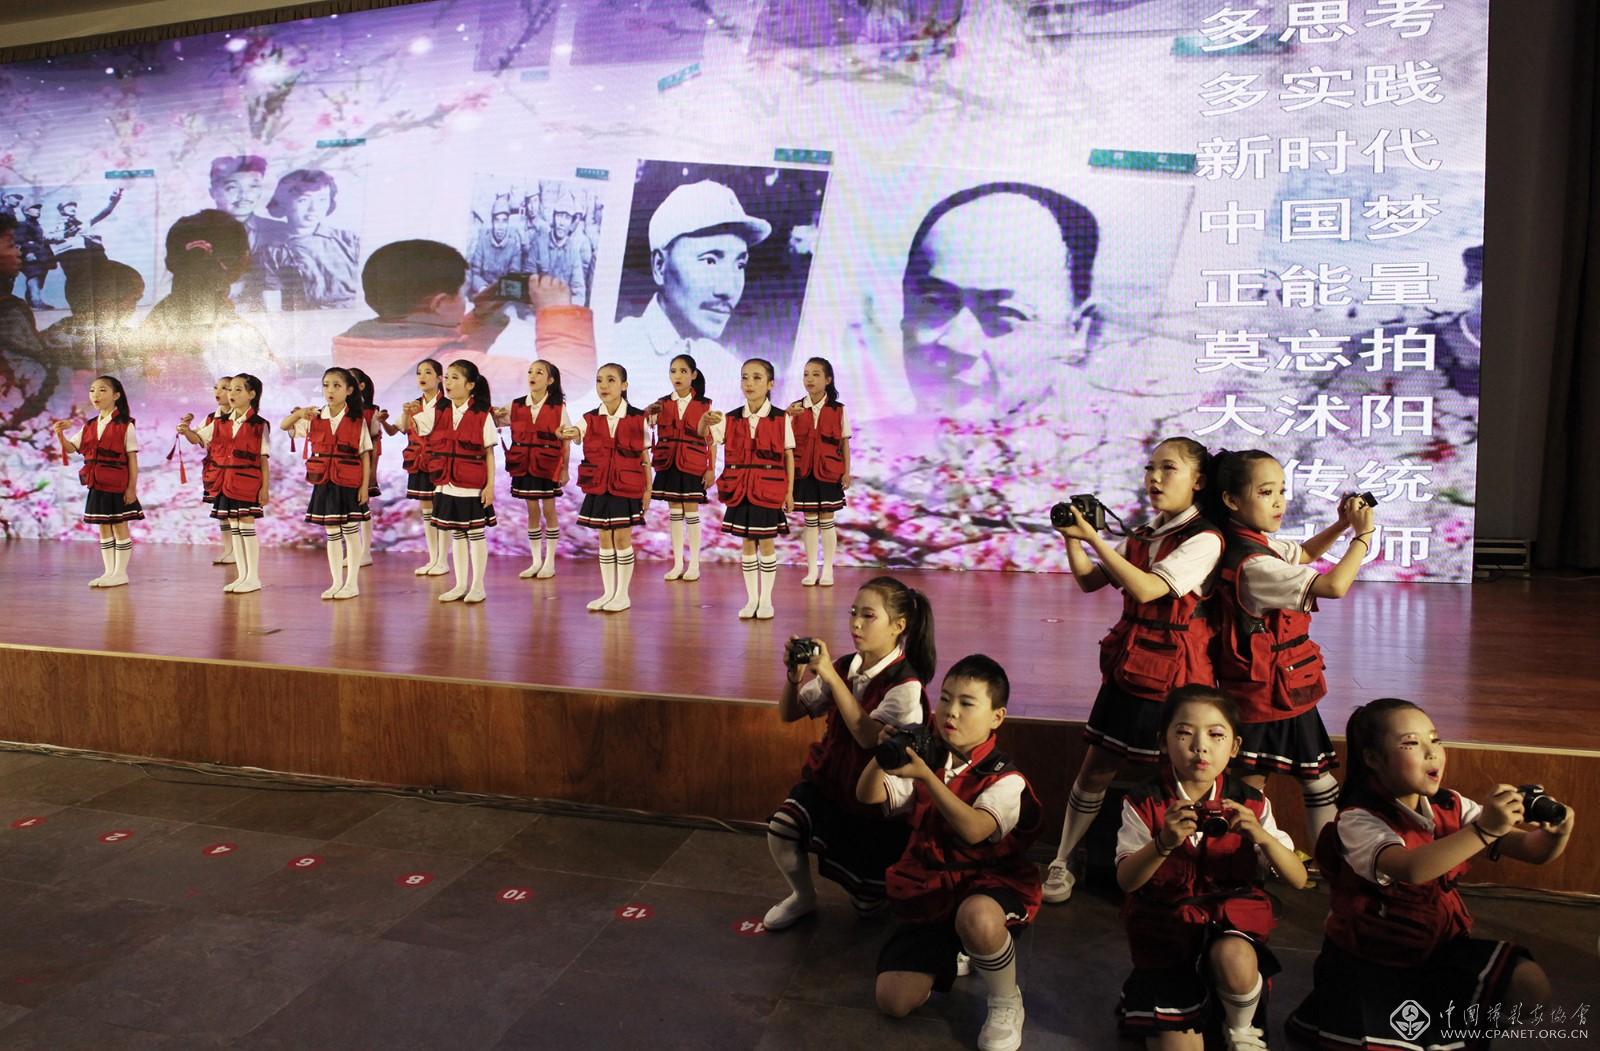 开幕式现场，沭阳县东兴小学小印咸摄影社团学生们表演《摄影三字经》许瀚文 摄影.jpg